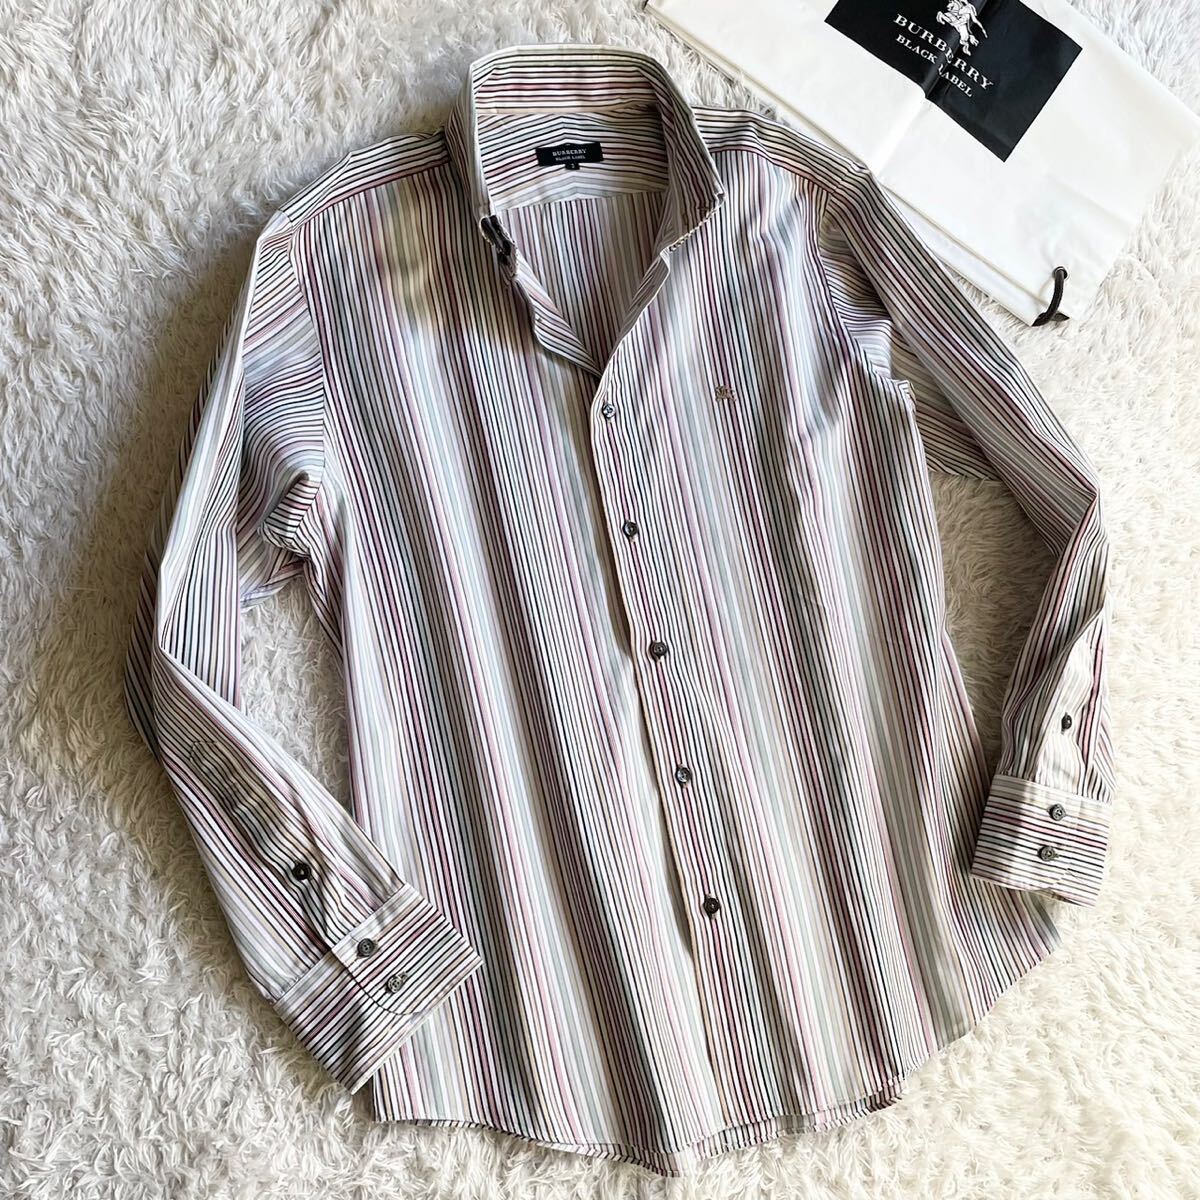  прекрасный товар редкий 3|L! Burberry Black Label рубашка BD длинный рукав шланг вышивка полоса [ подавляющий джентльмен чувство ] BURBERRY BLACK LABEL многоцветный 